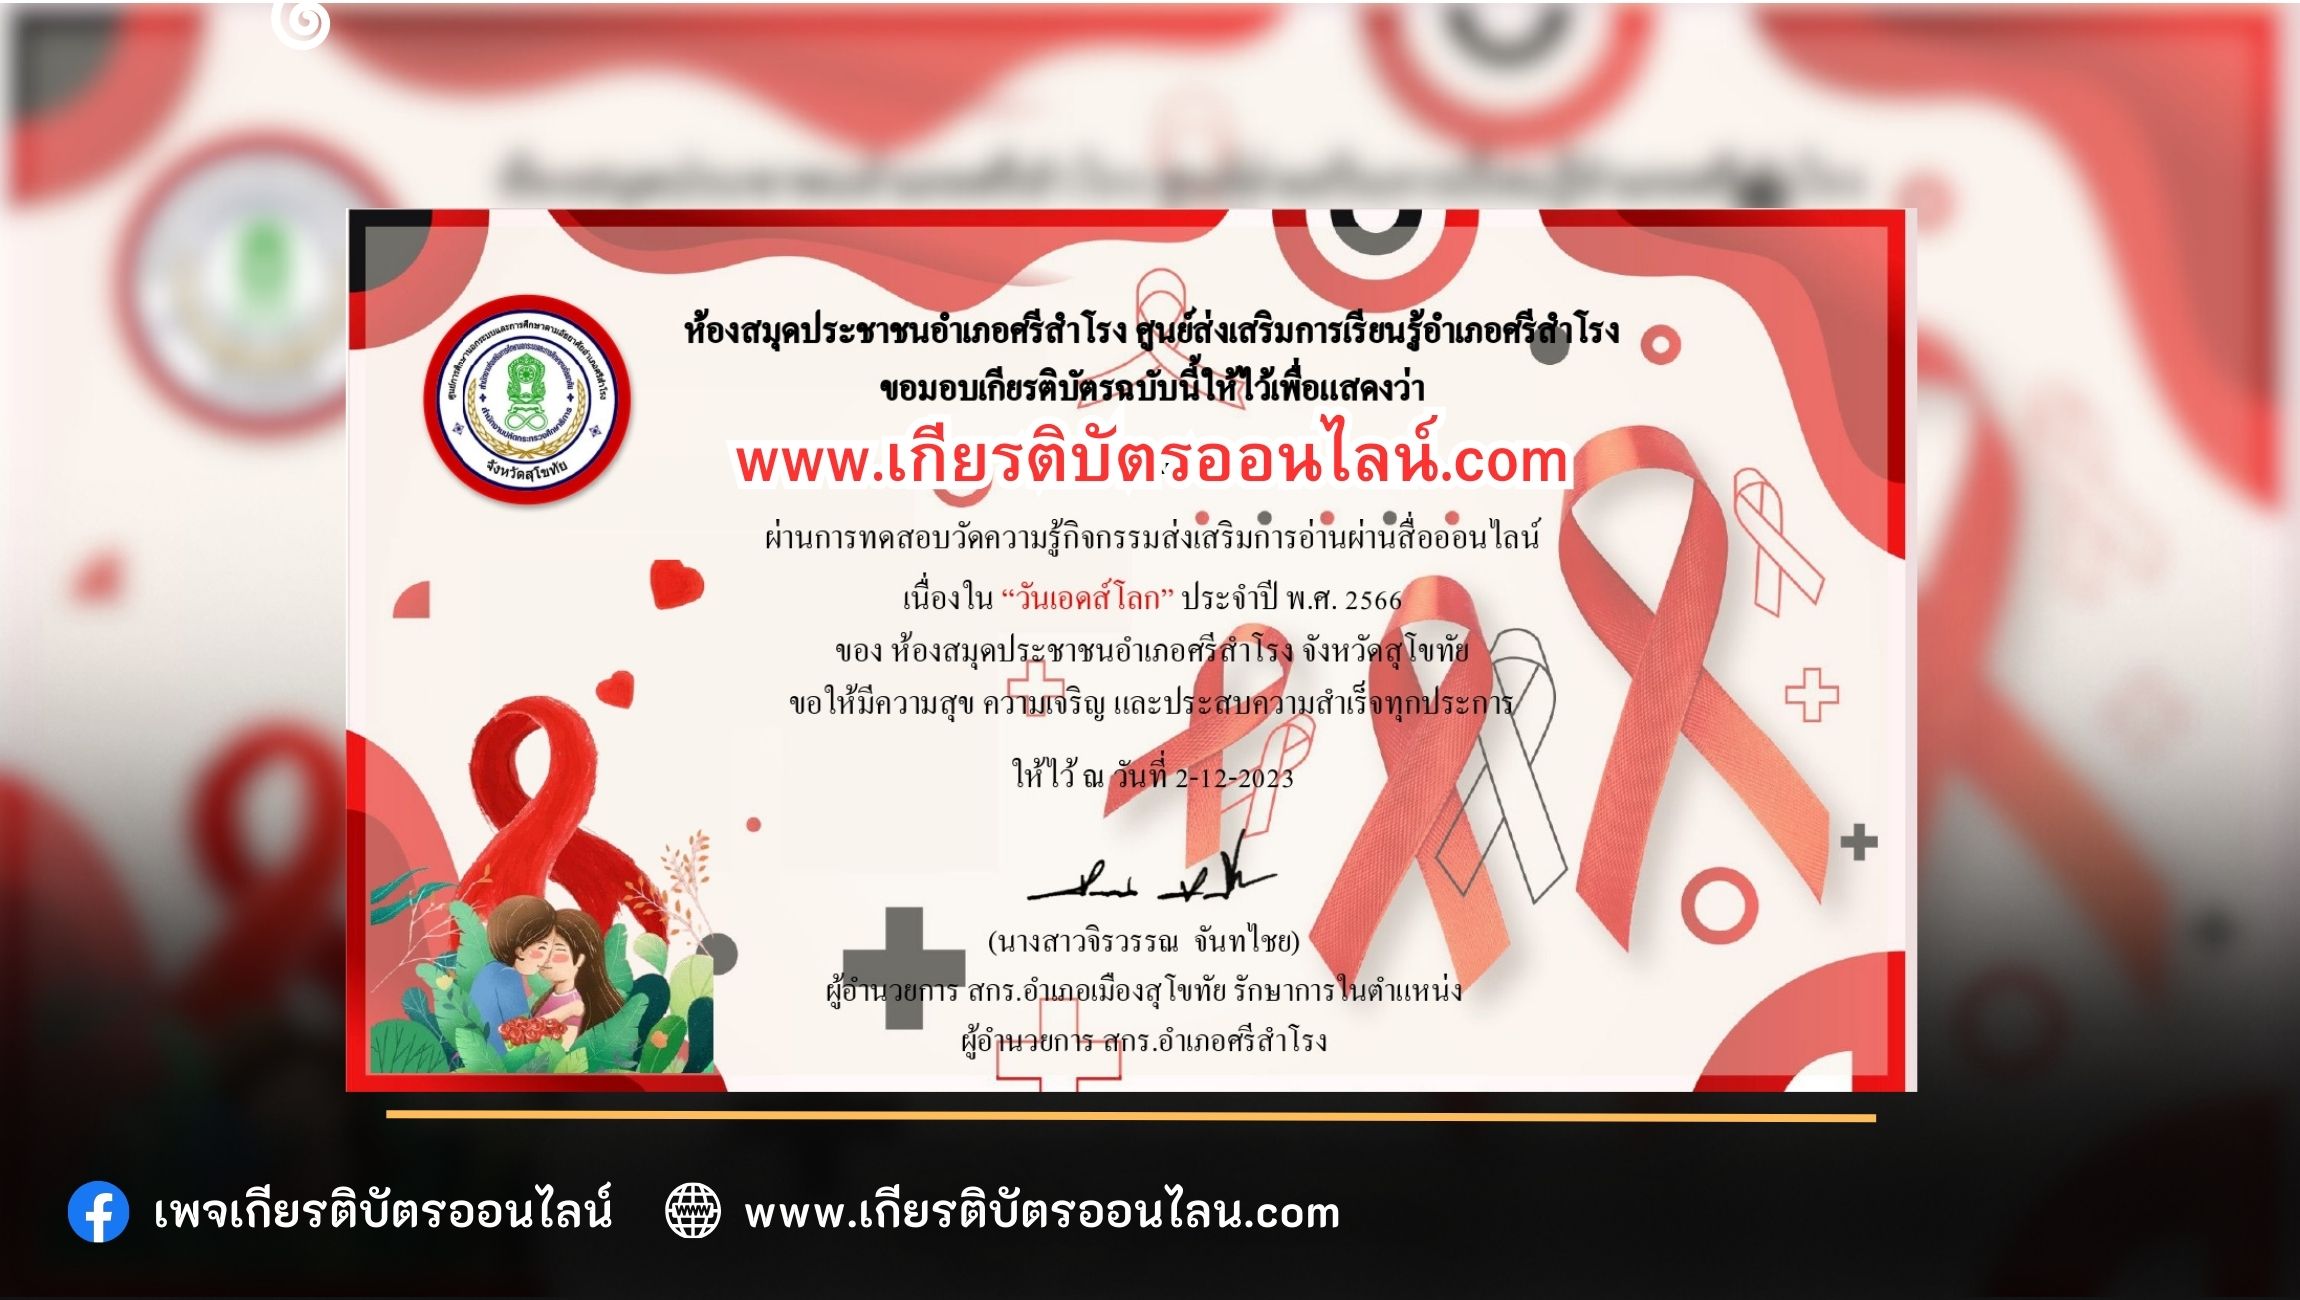 เกียรติบัตรออนไลน์ฟรี กิจกรรมวันเอดส์โลก